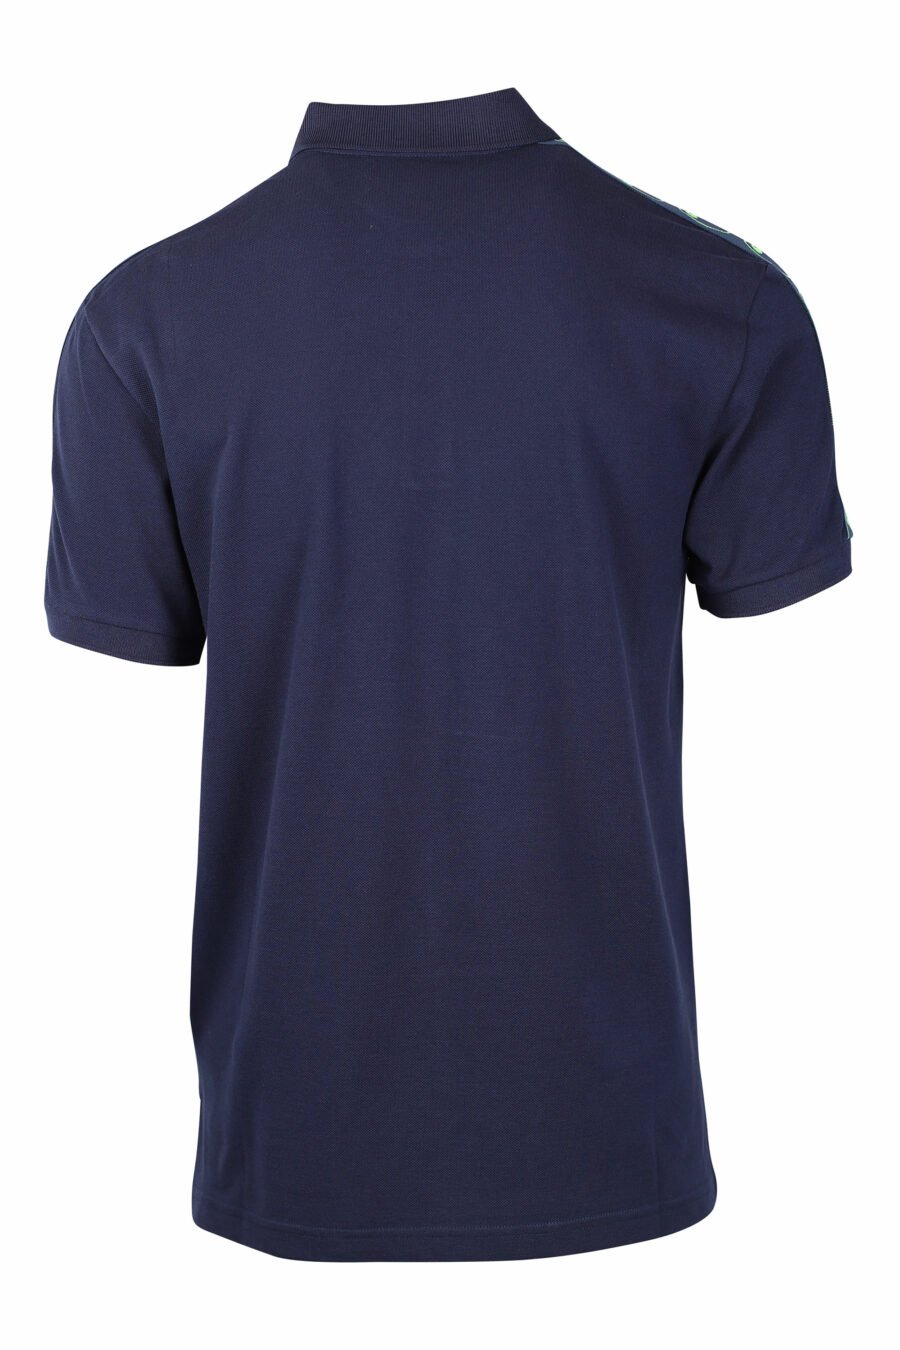 Dunkelblaues Poloshirt mit doppelter Minifrage und grünem Schulterlogo - IMG 1452